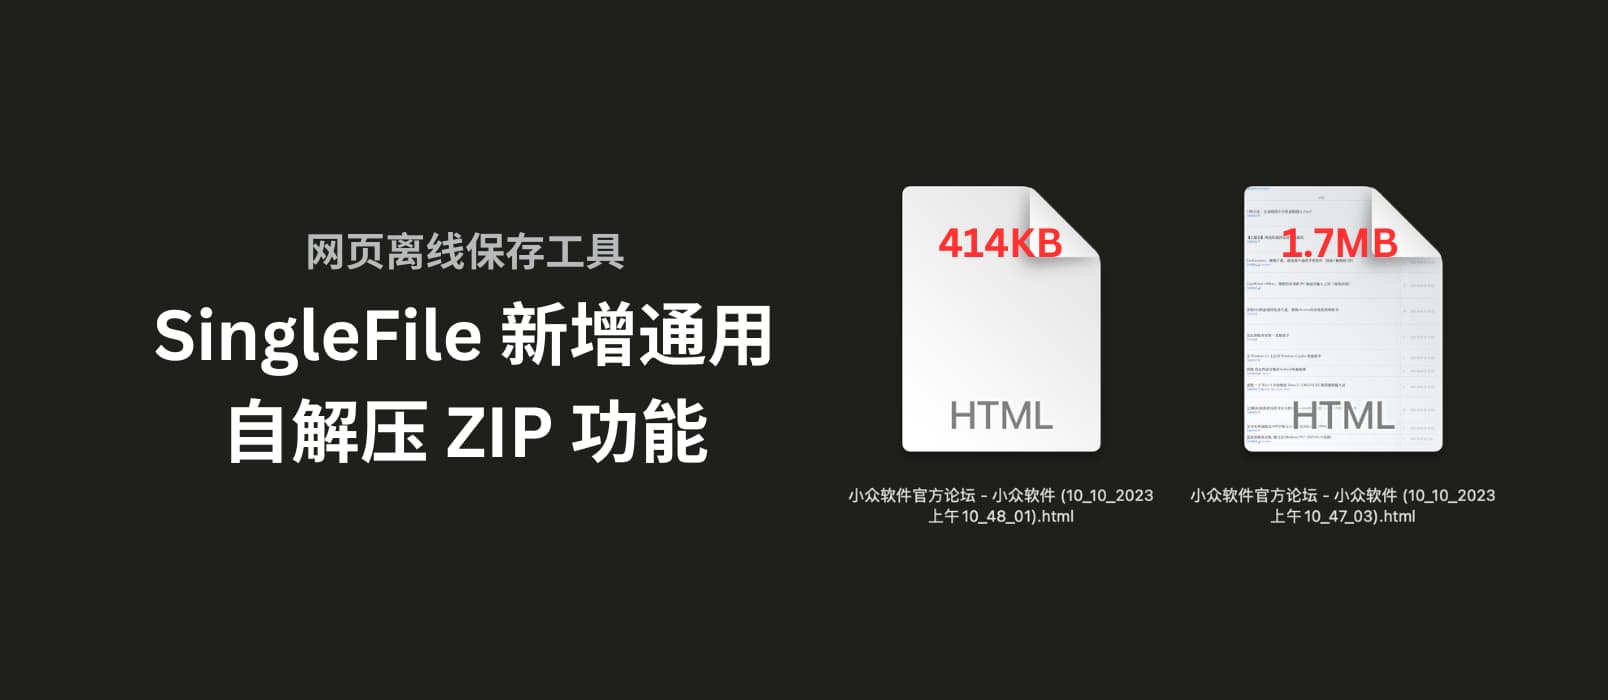 著名网页离线保存工具 SingleFile v1.22 新增通用自解压 ZIP 功能，可节省 4 倍硬盘空间